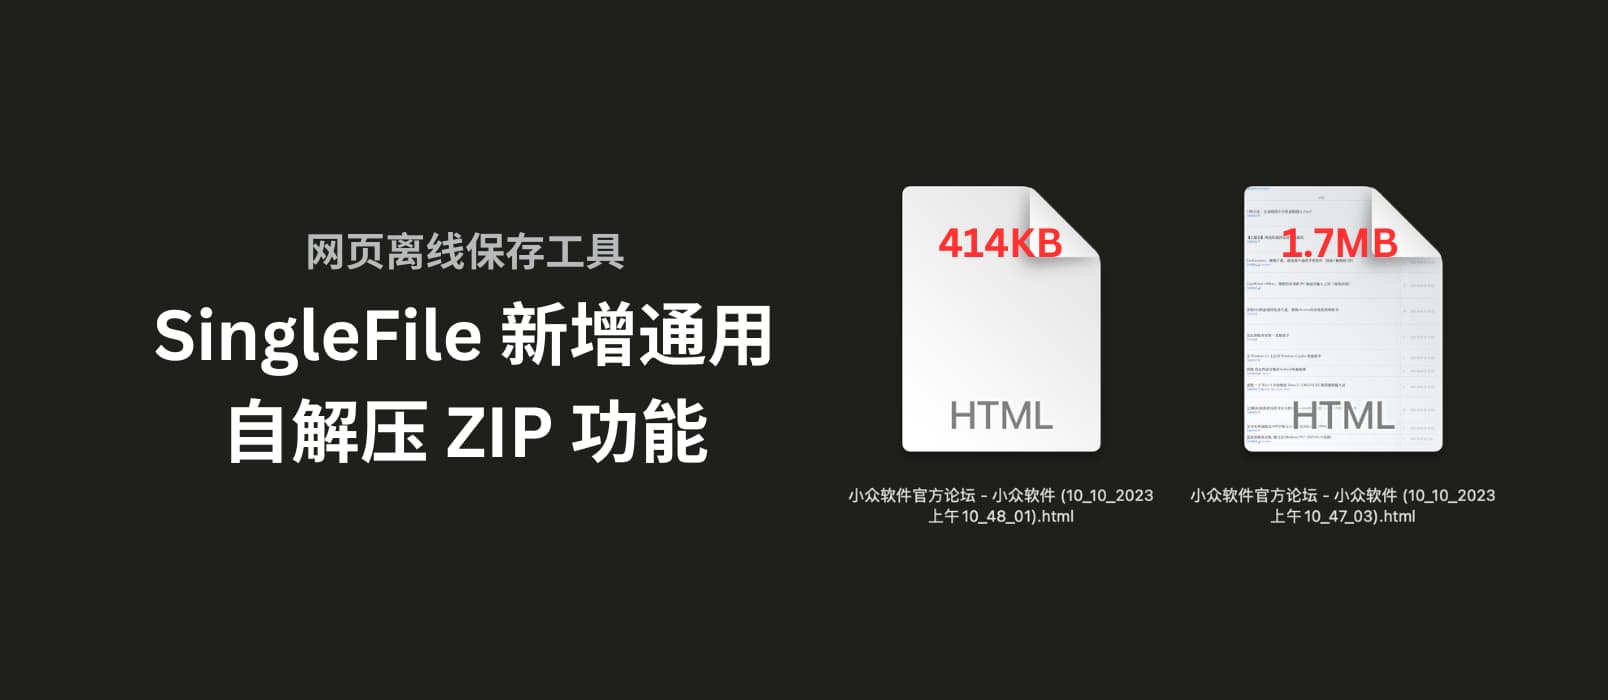 著名网页离线保存工具 SingleFile v1.22 新增通用自解压 ZIP 功能，可节省 4 倍硬盘空间